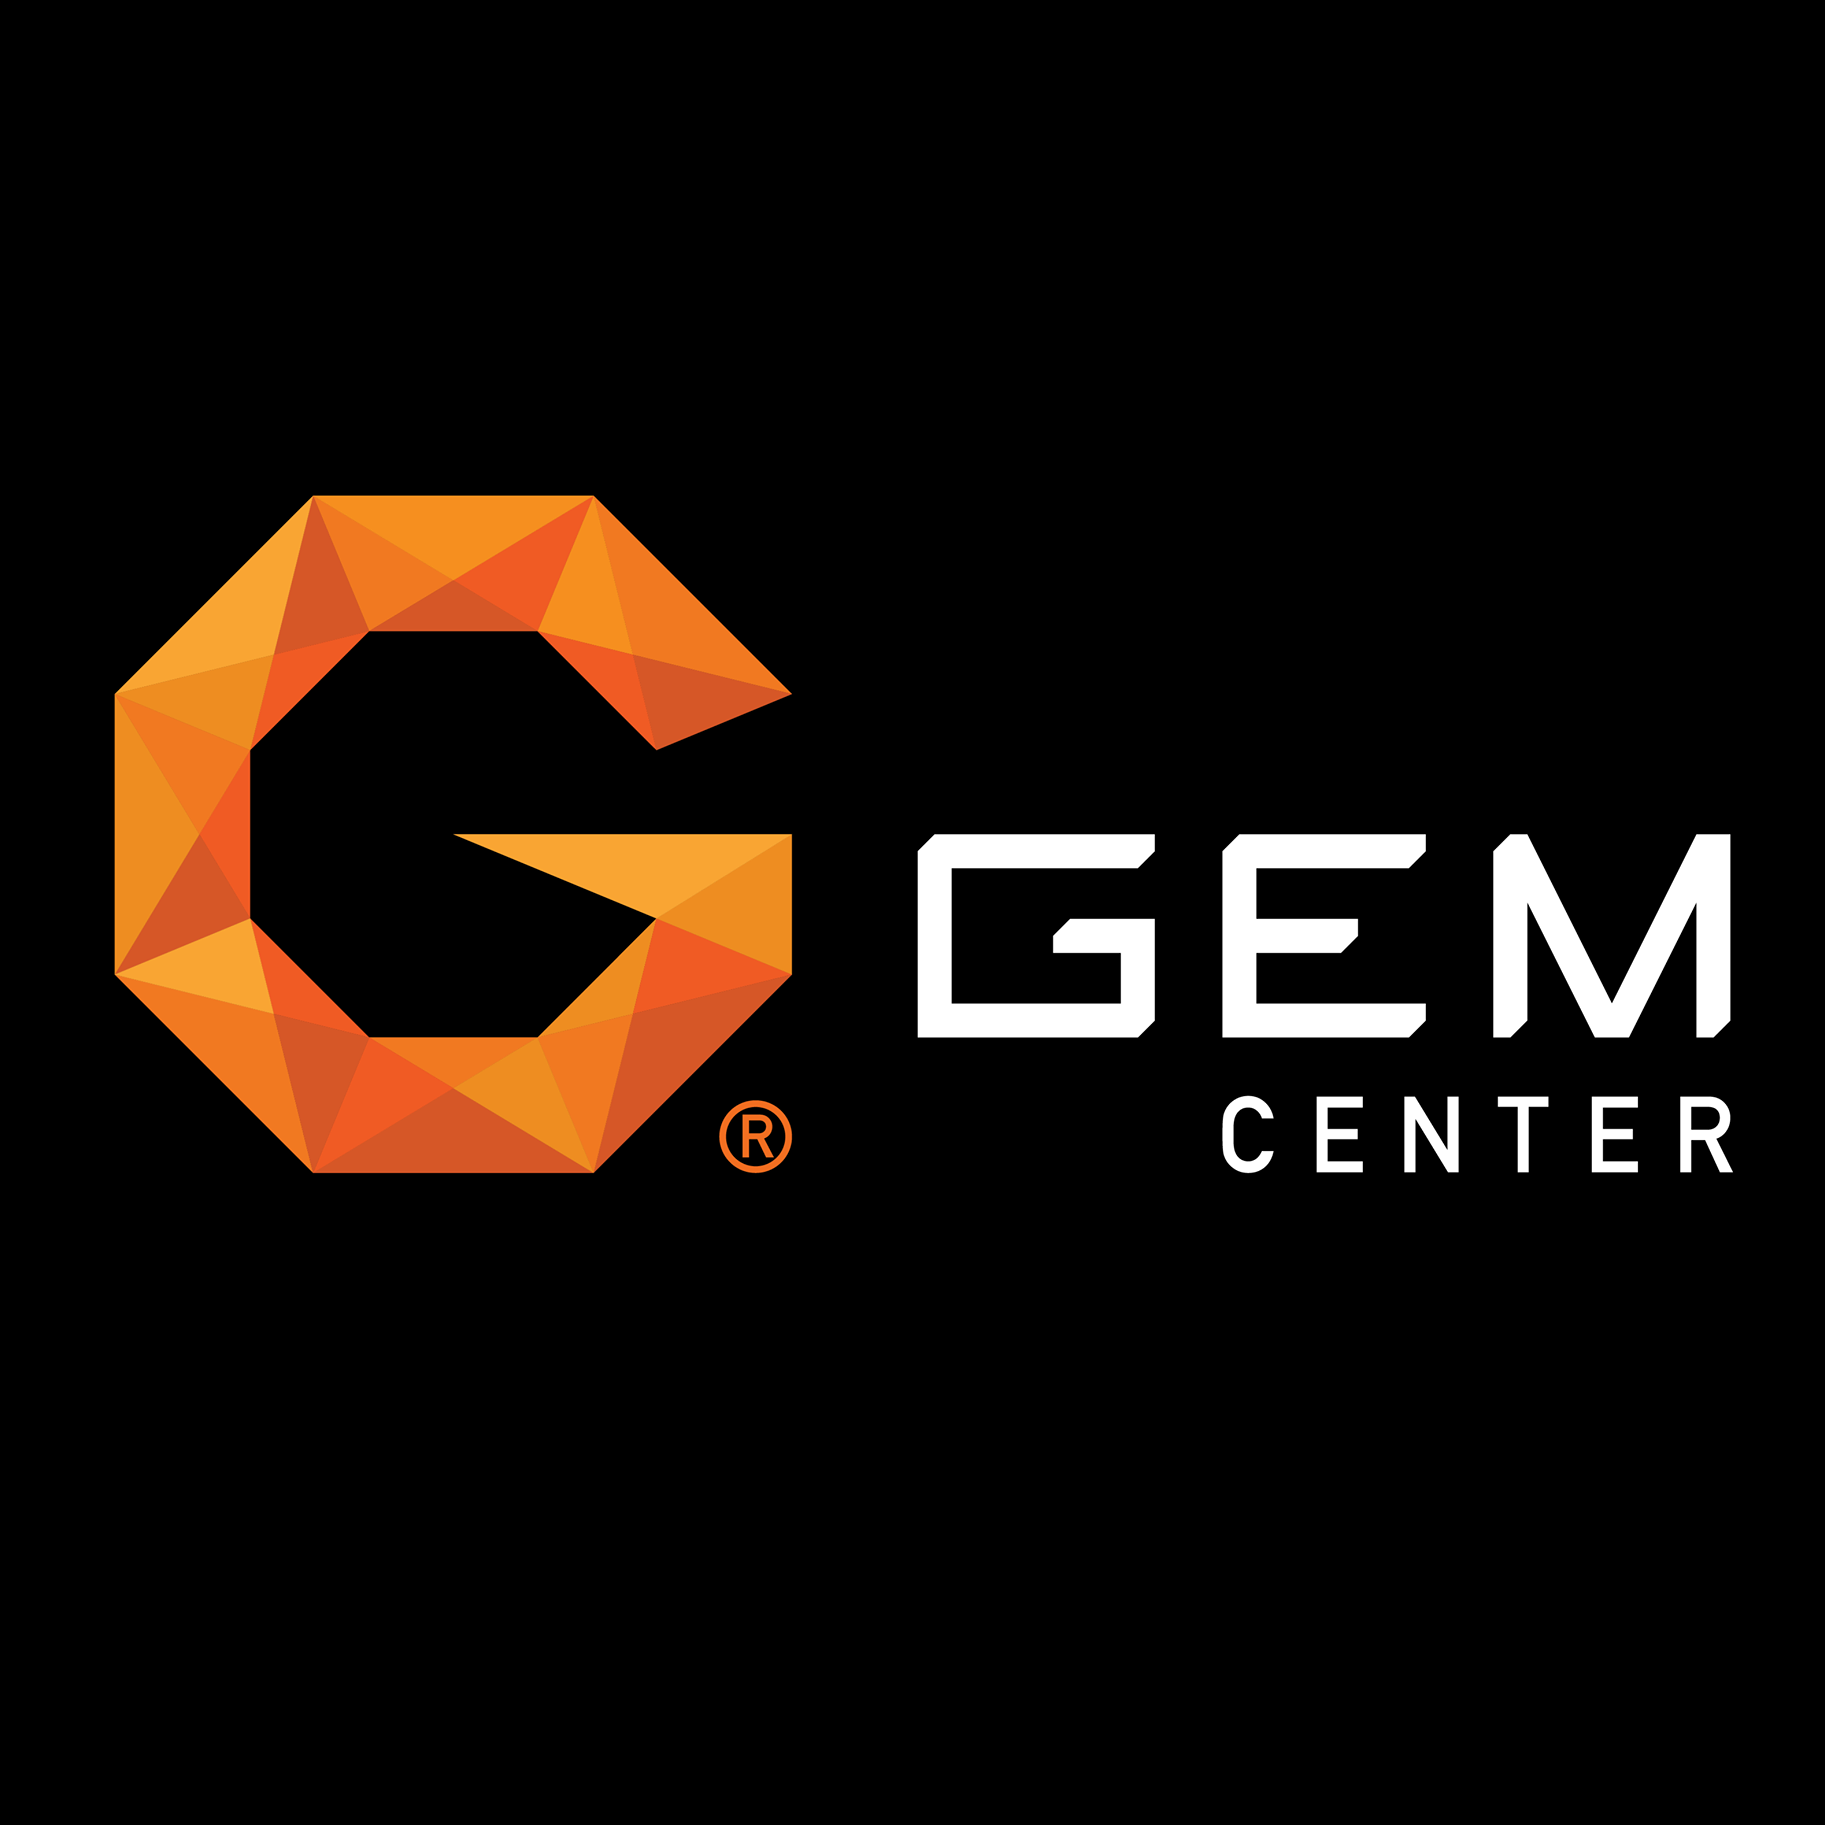 Gem Center